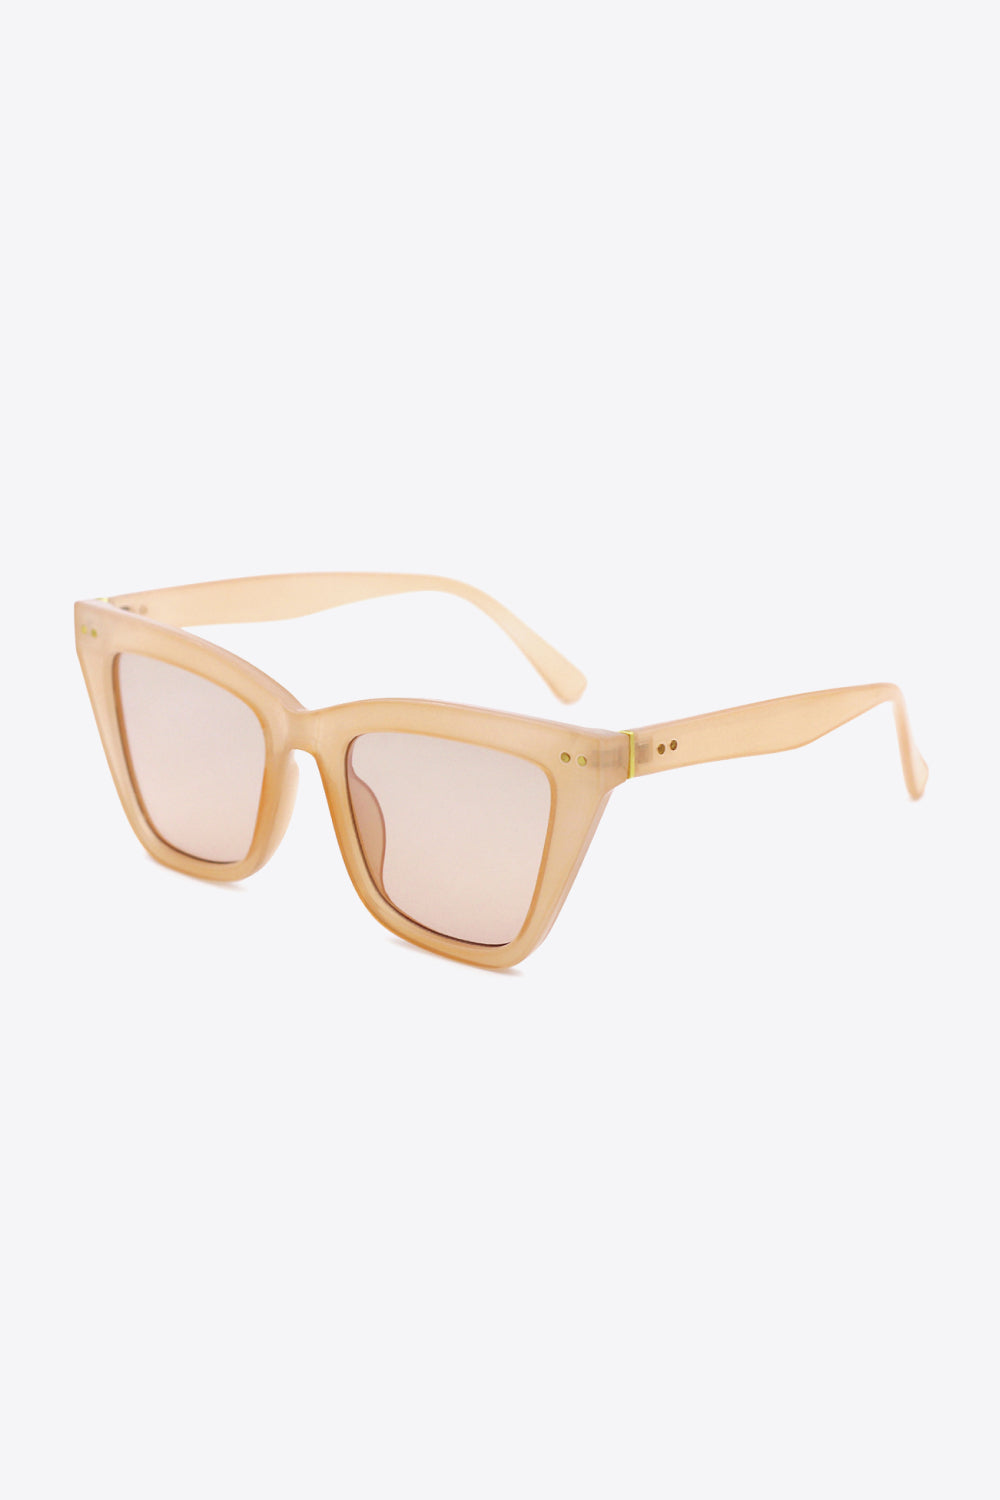 The802Gypsy sunglasses GYPSY-UV400 Polycarbonate Frame Sunglasses